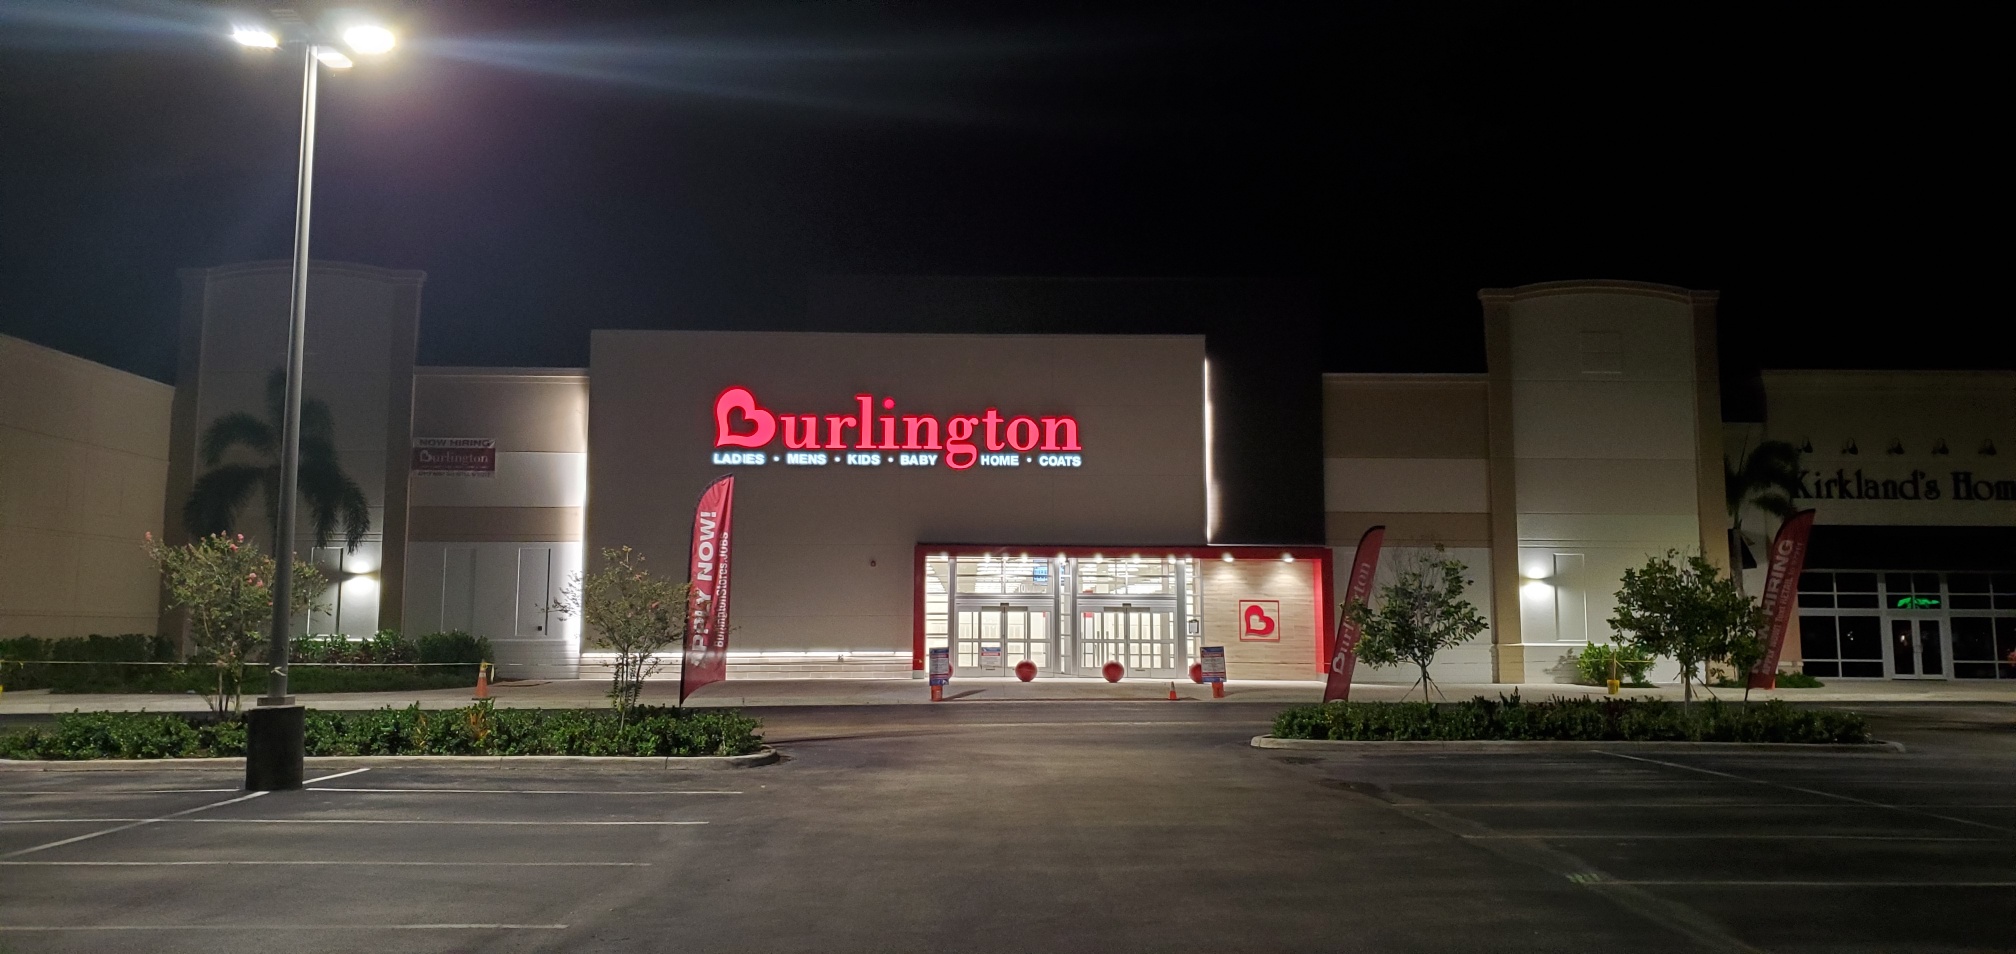 burlington employee login